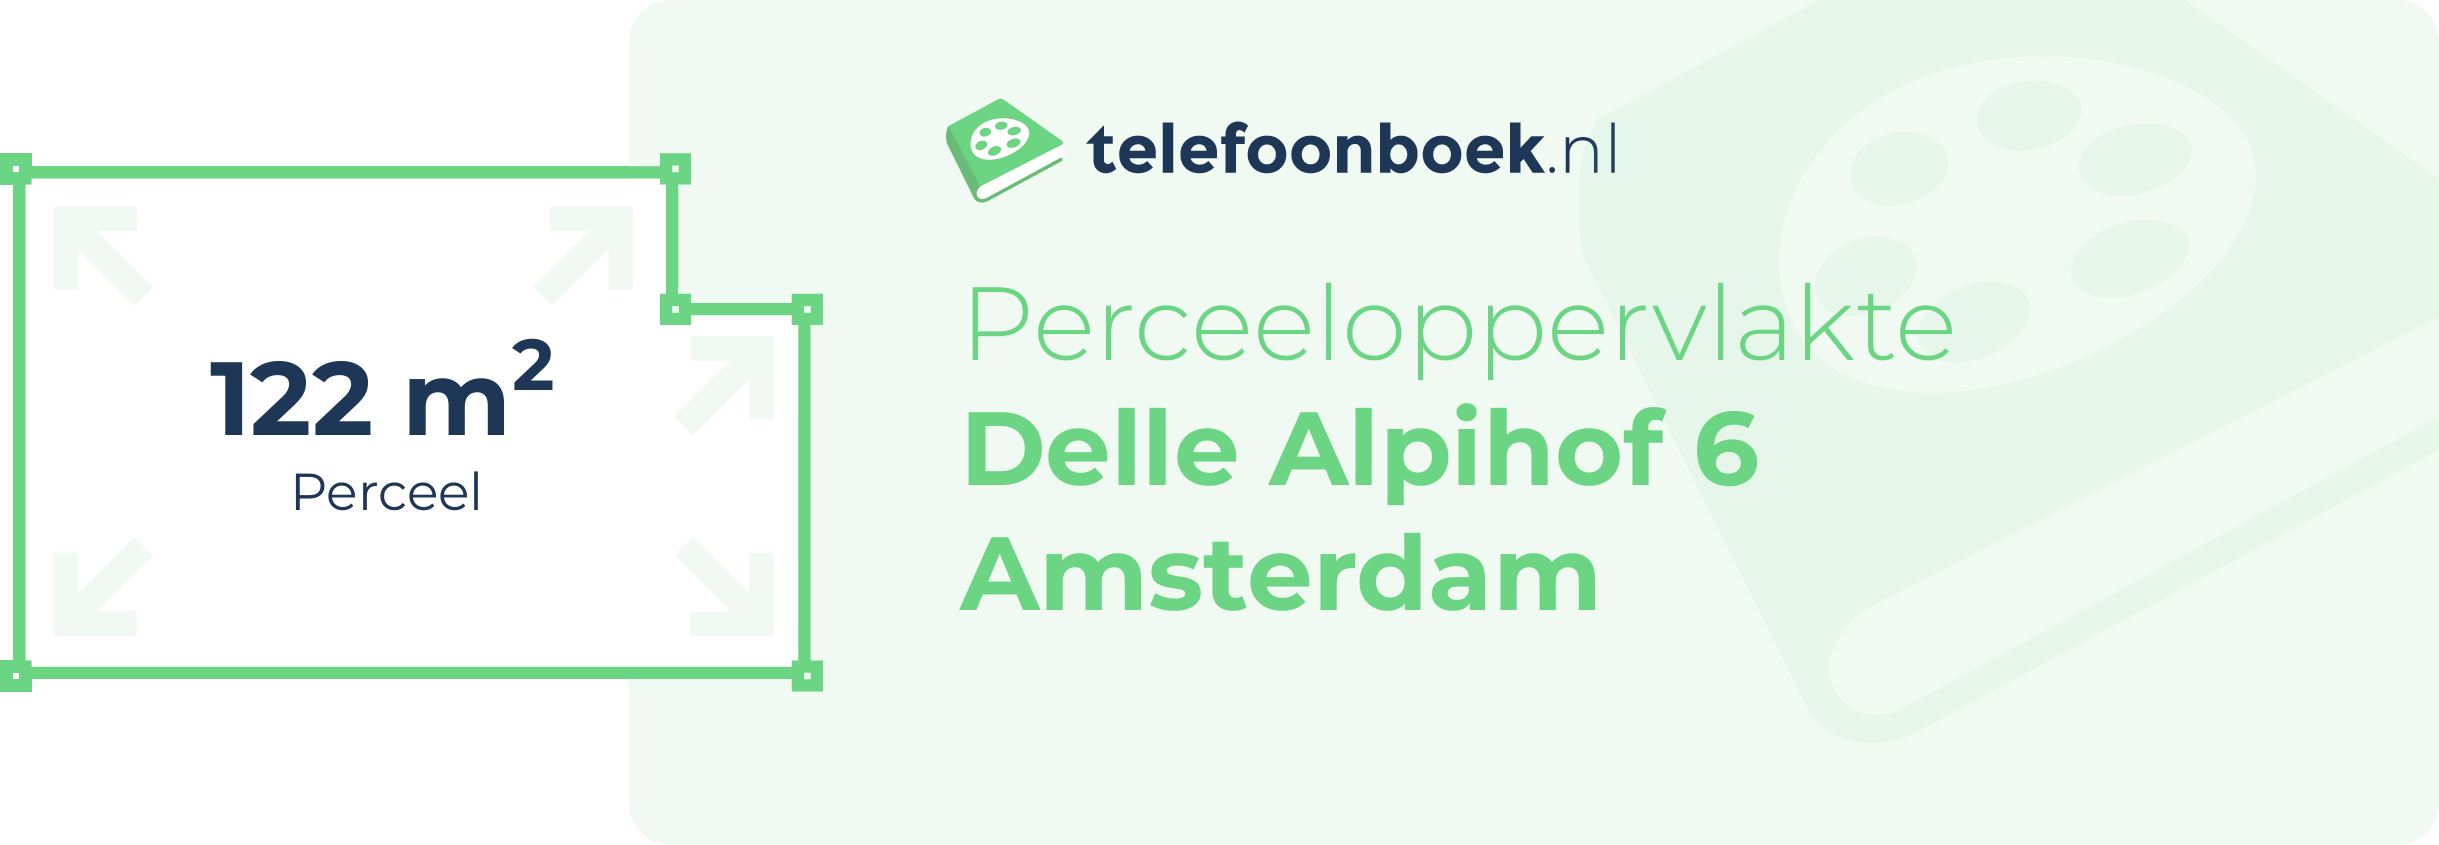 Perceeloppervlakte Delle Alpihof 6 Amsterdam